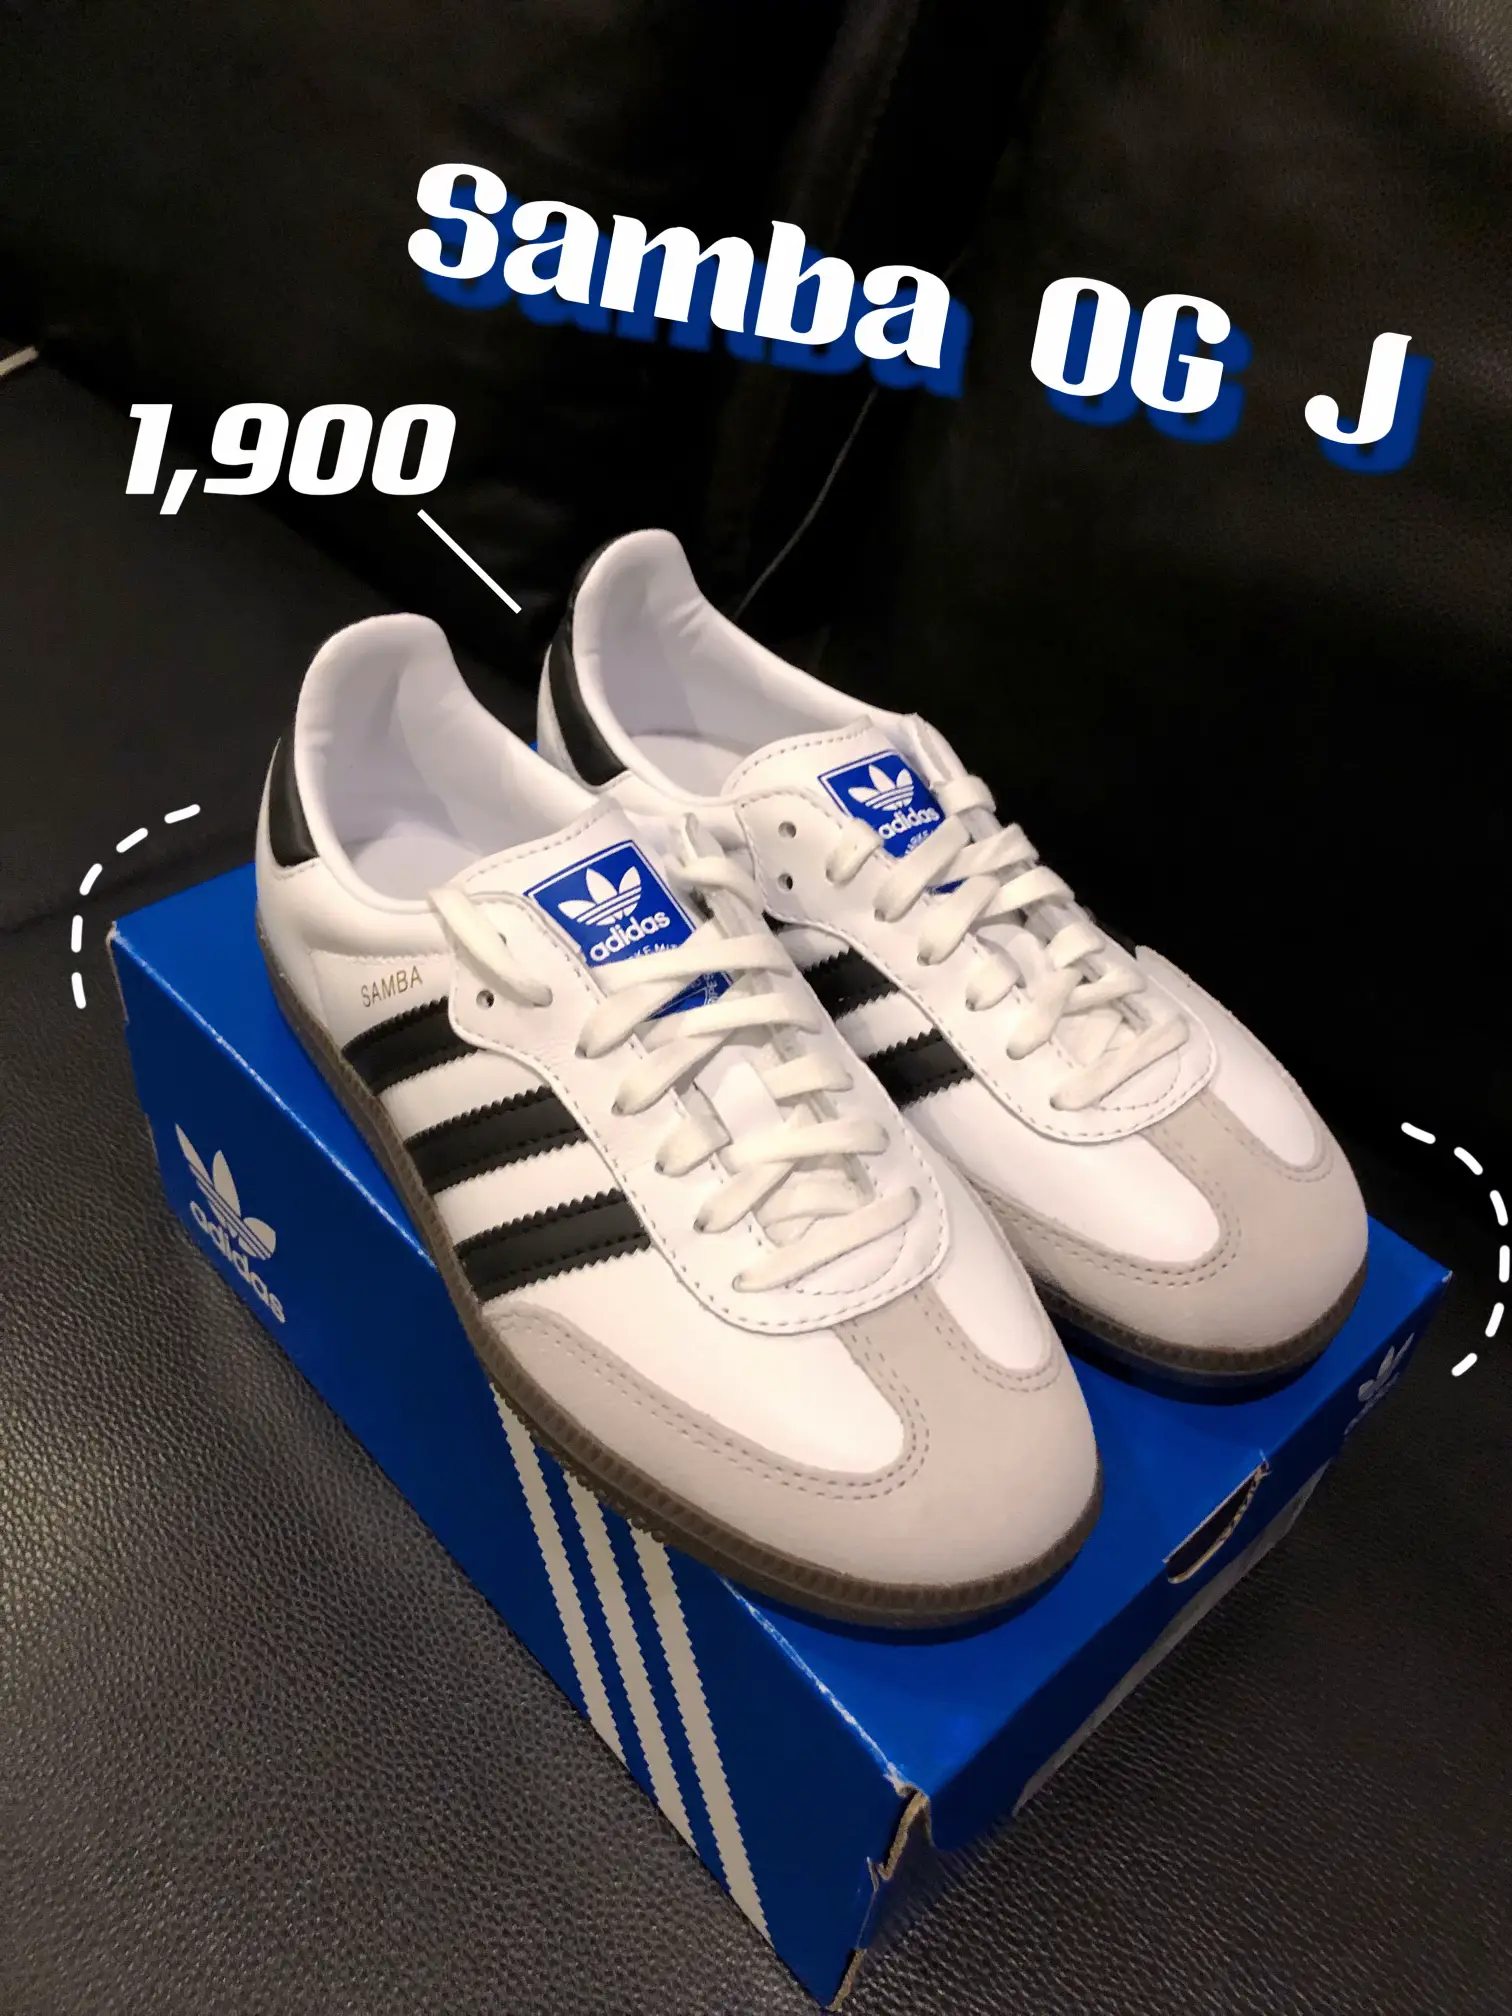 Samba OG J 1,900 Great Price✨ | Gallery posted by Nattiya | Lemon8